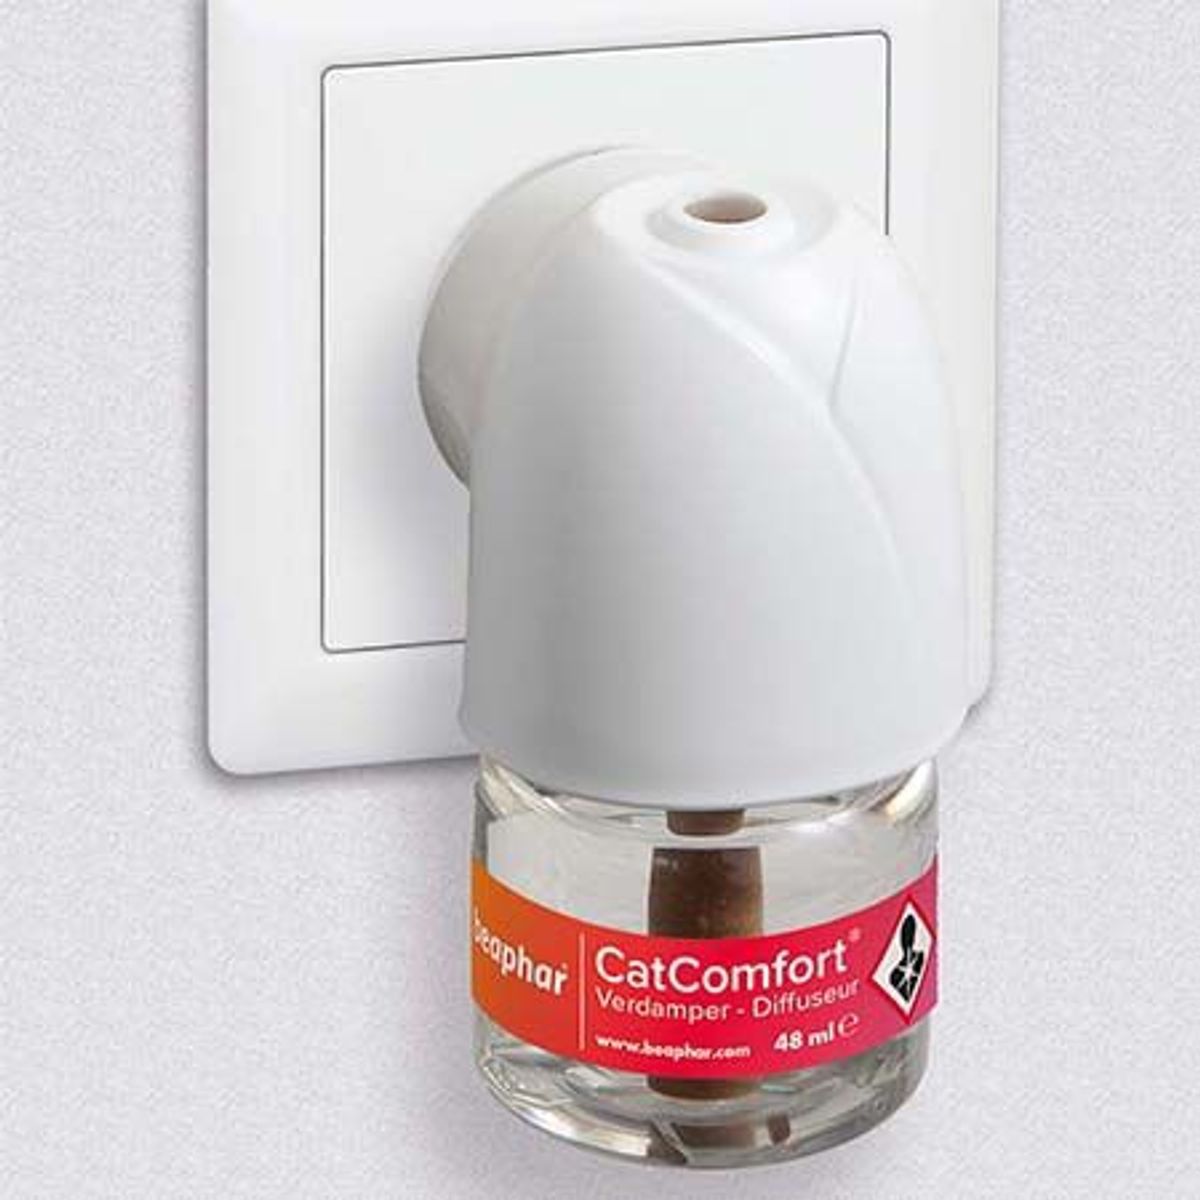 Diffuseur et recharge 48 ml "CatComfort" - Beaphar